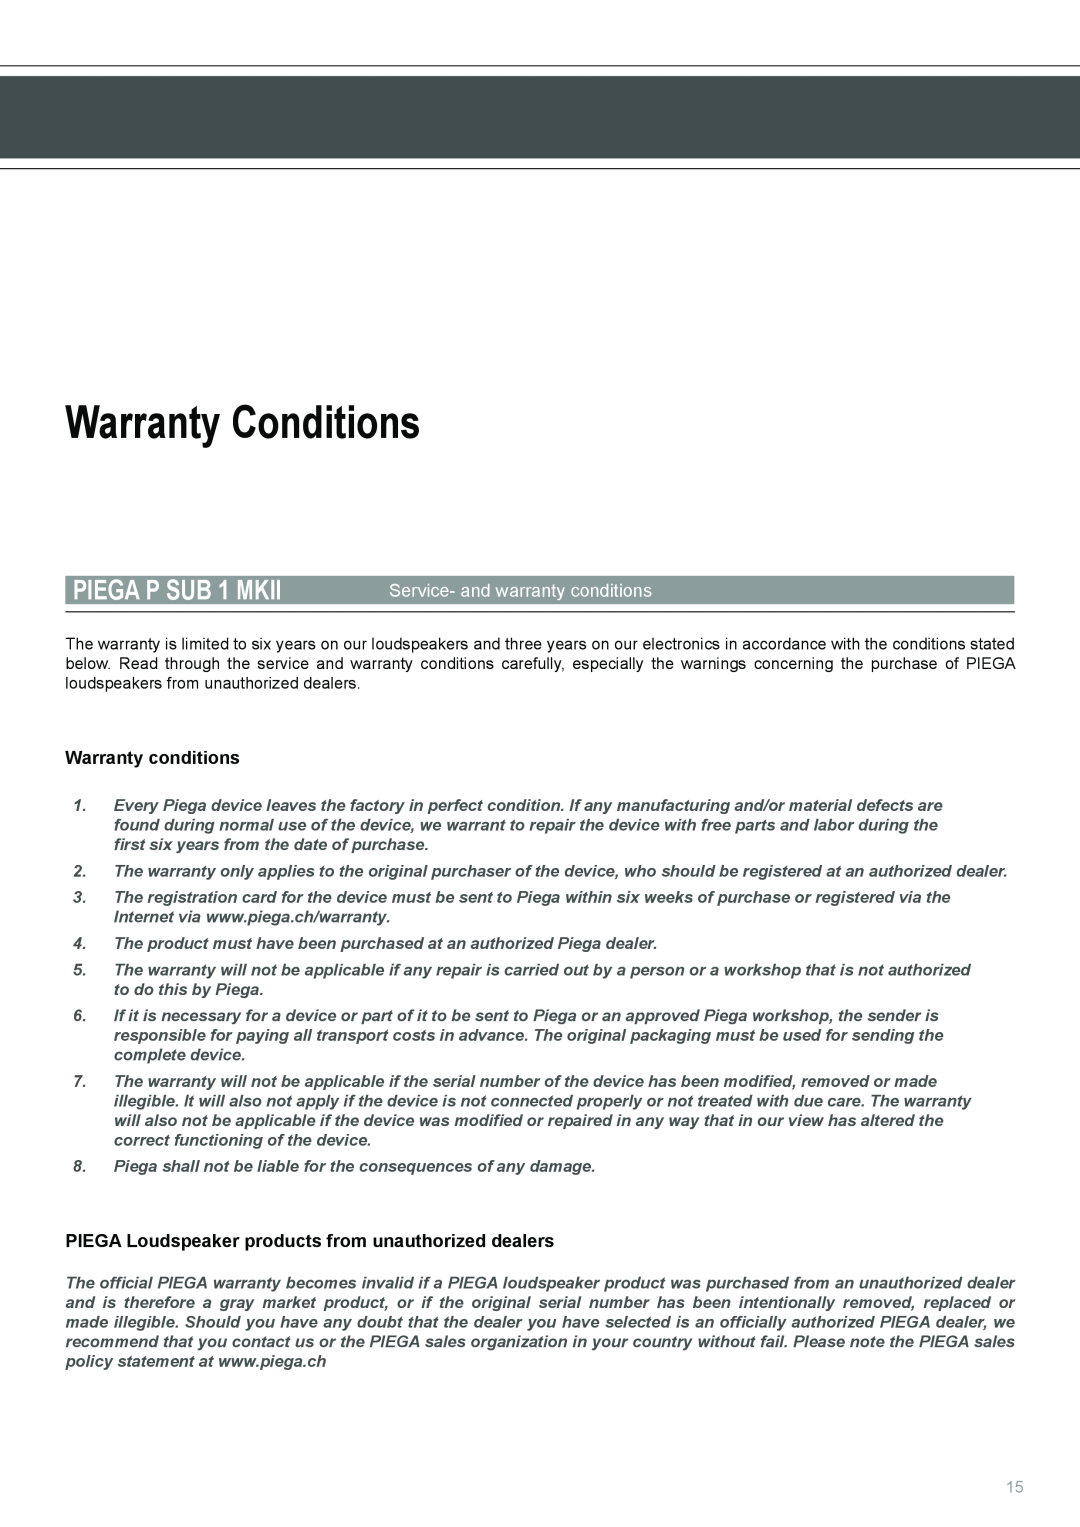 Piega user manual Warranty Conditions, Service- and warranty conditions, PIEGA P SUB 1 MKII, Warranty conditions 